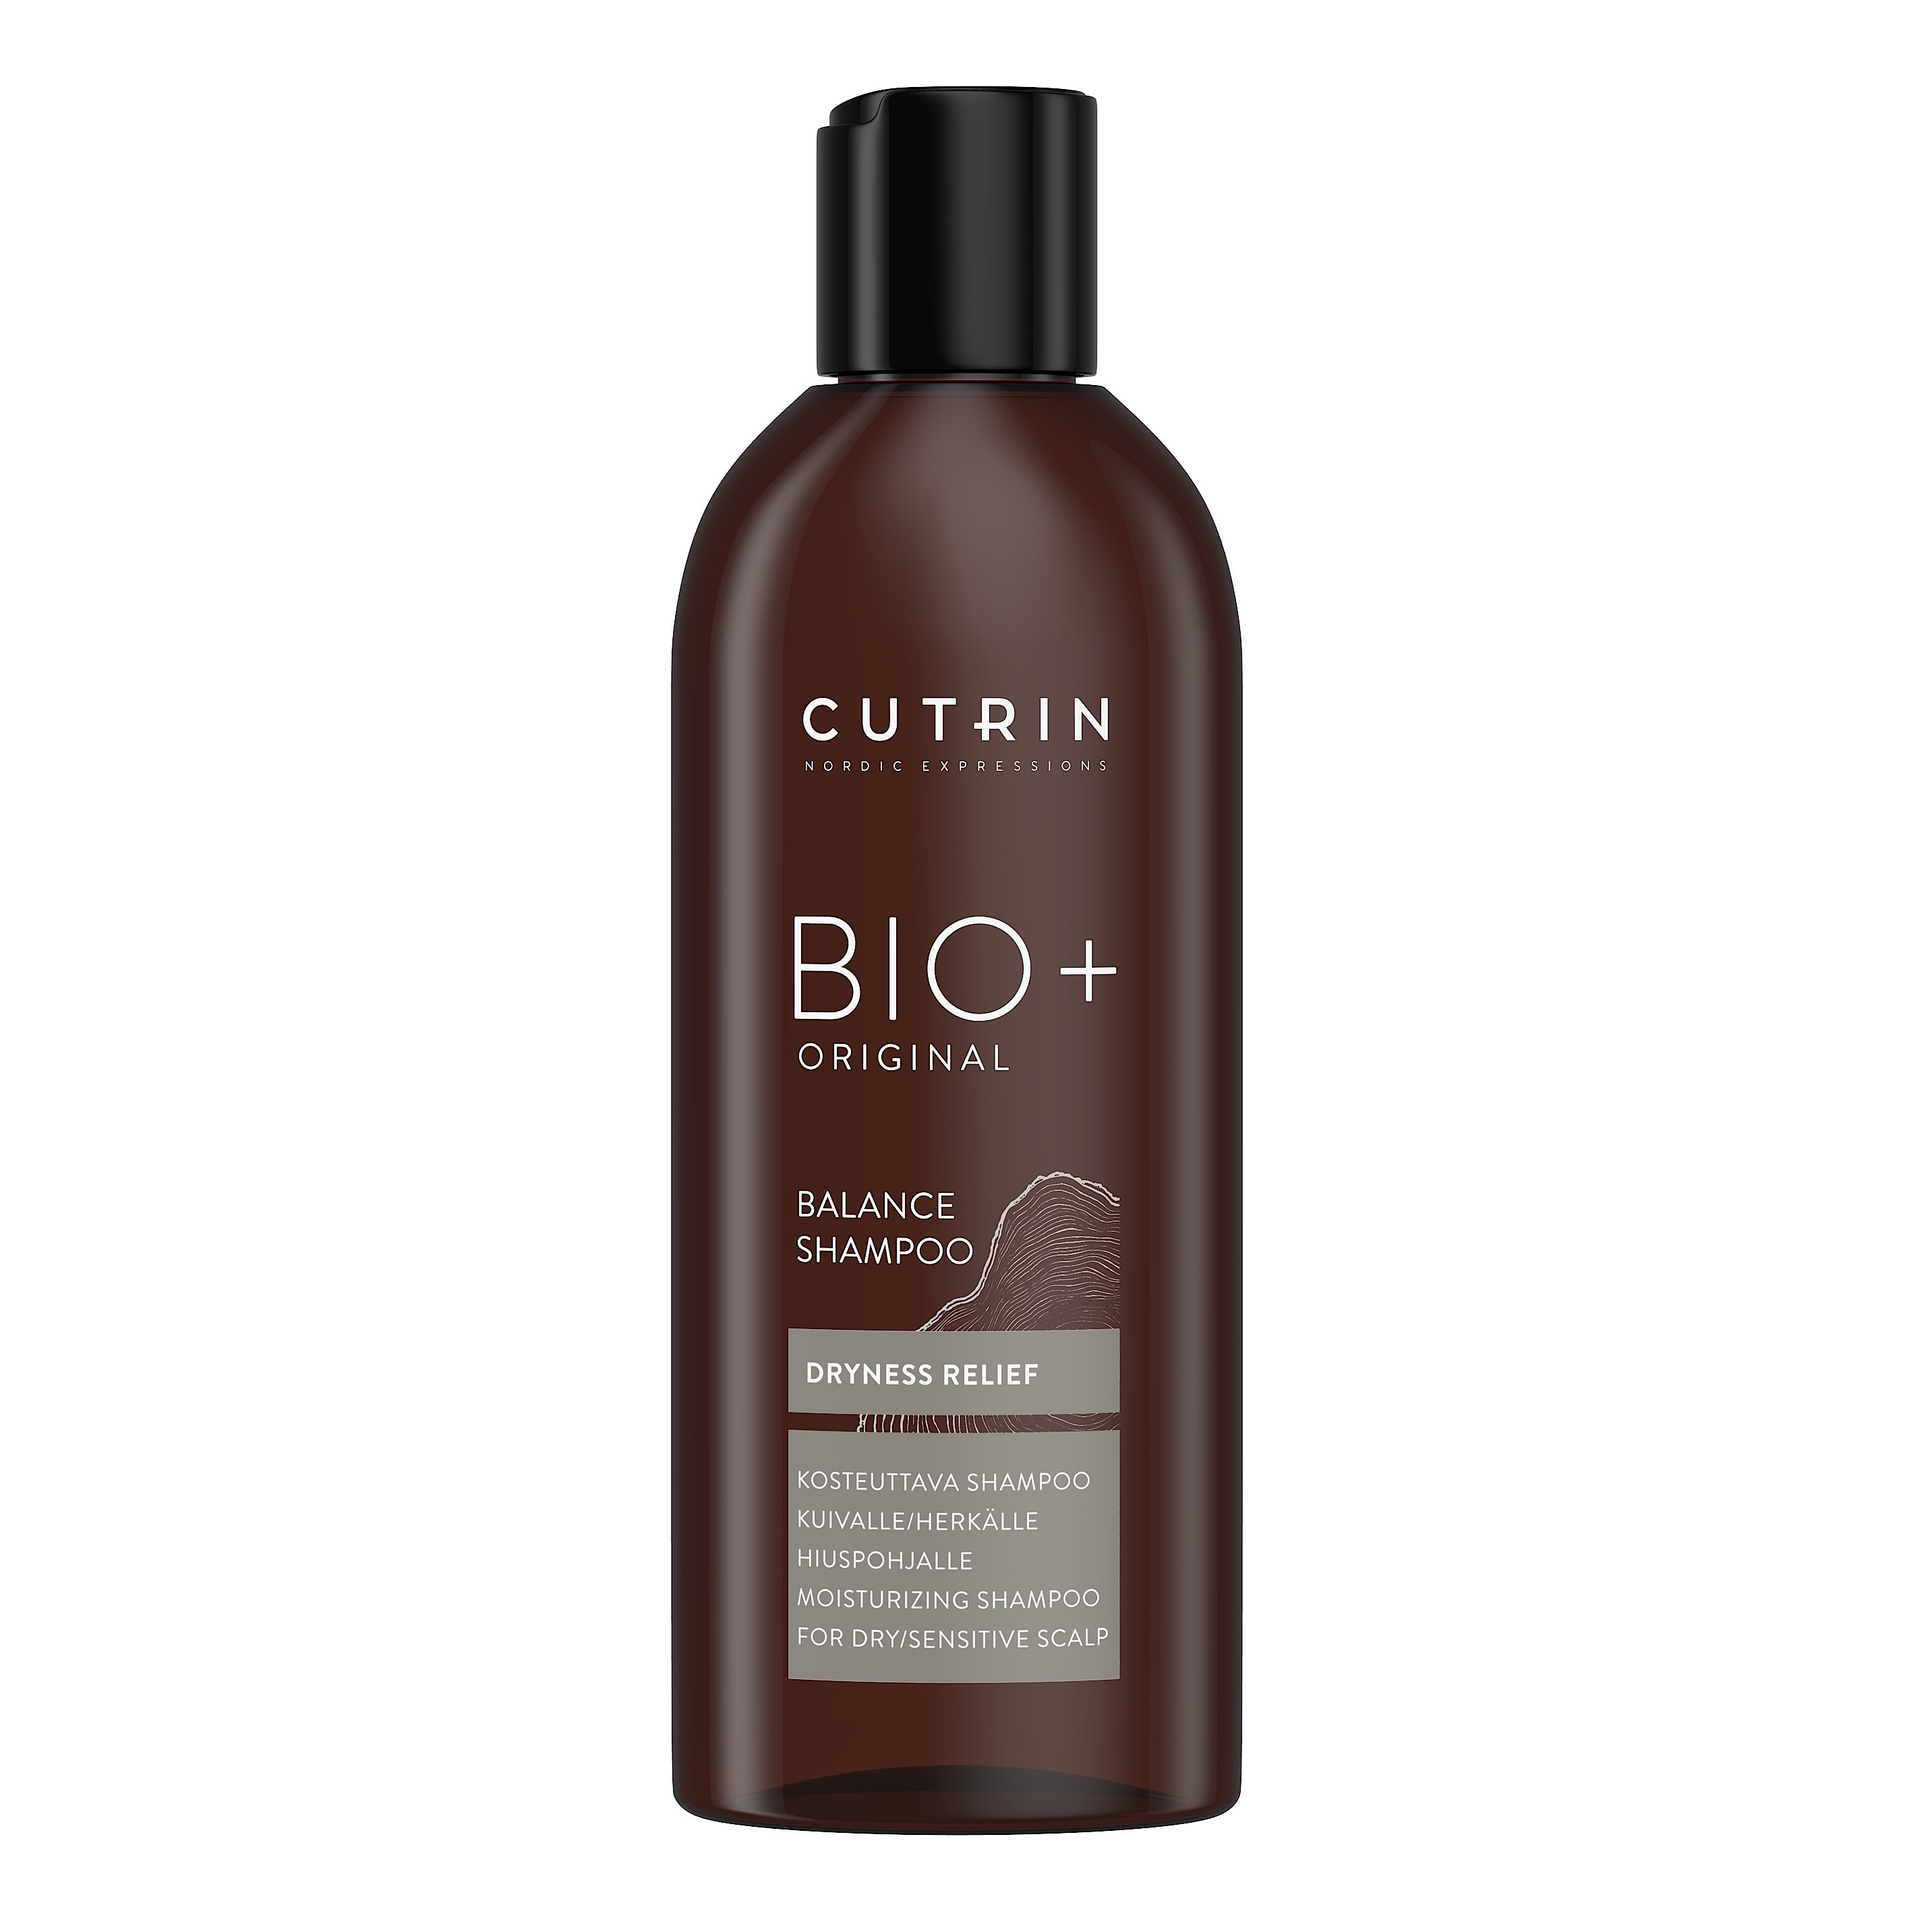 Cutrin Bio+ Original Balance Shampoo 200 ml